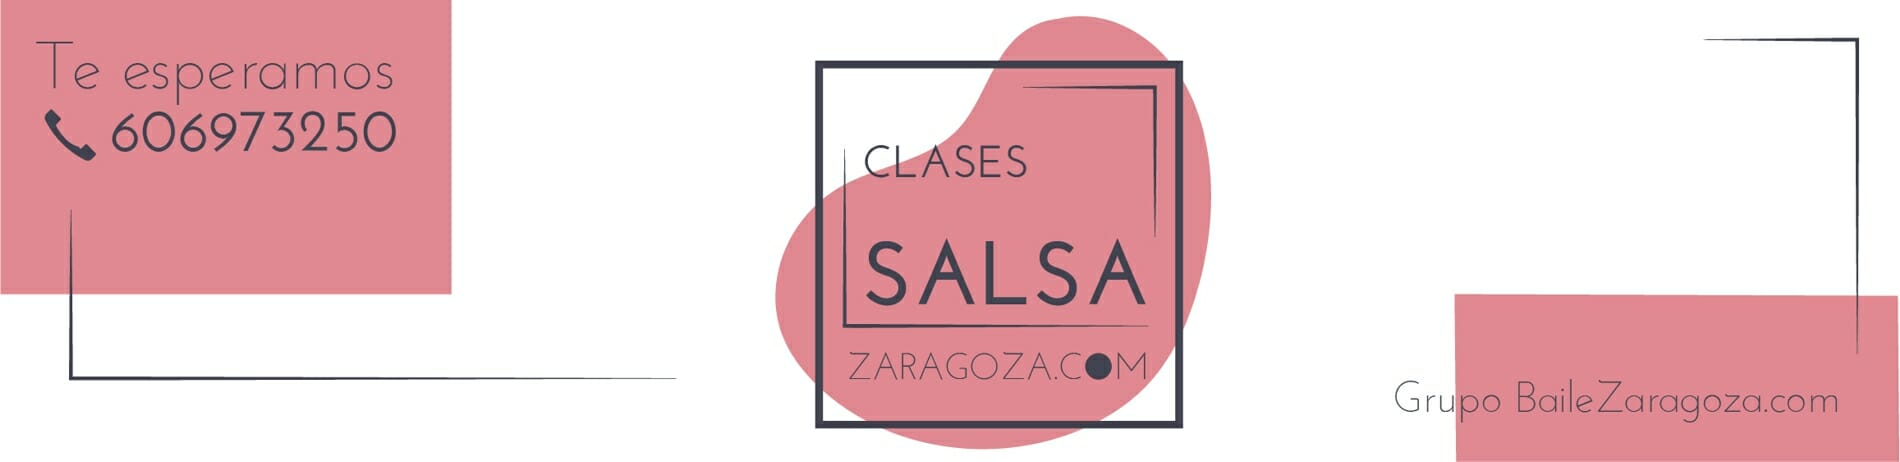 Clases Salsa Zaragoza|Escuela de Baile|Clases de Bachata